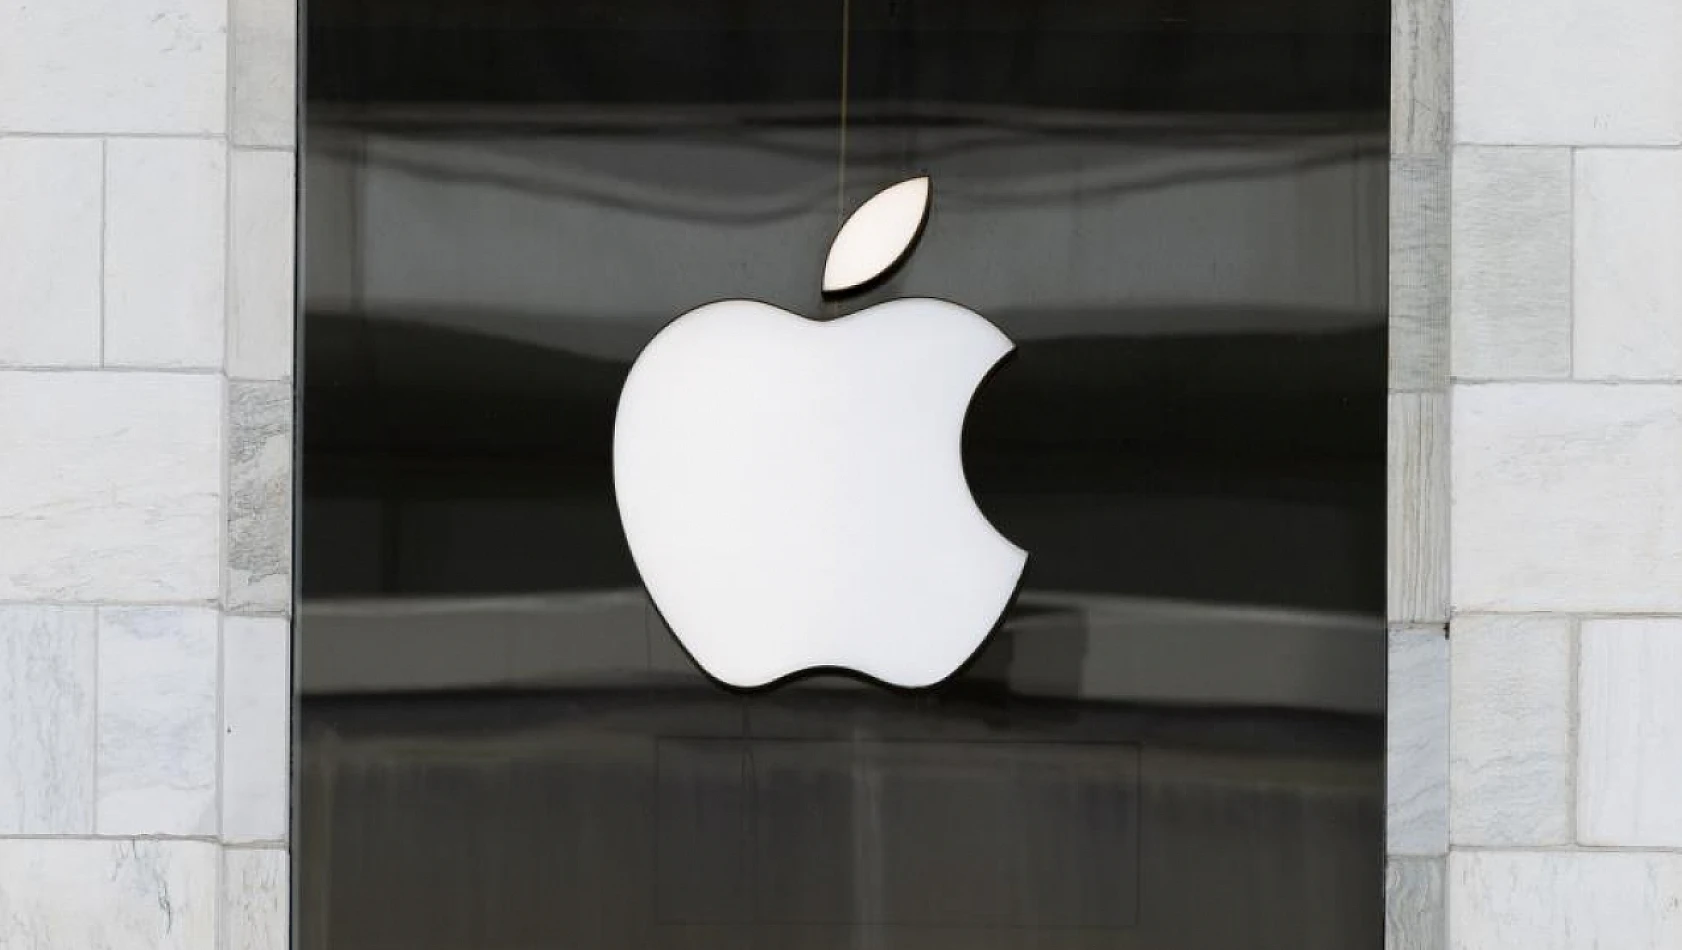 Çin, iPhone ve diğer yabancı markalara ait akıllı telefonları yasakladı mı? Apple, 200 milyar dolar kaybetti mi?